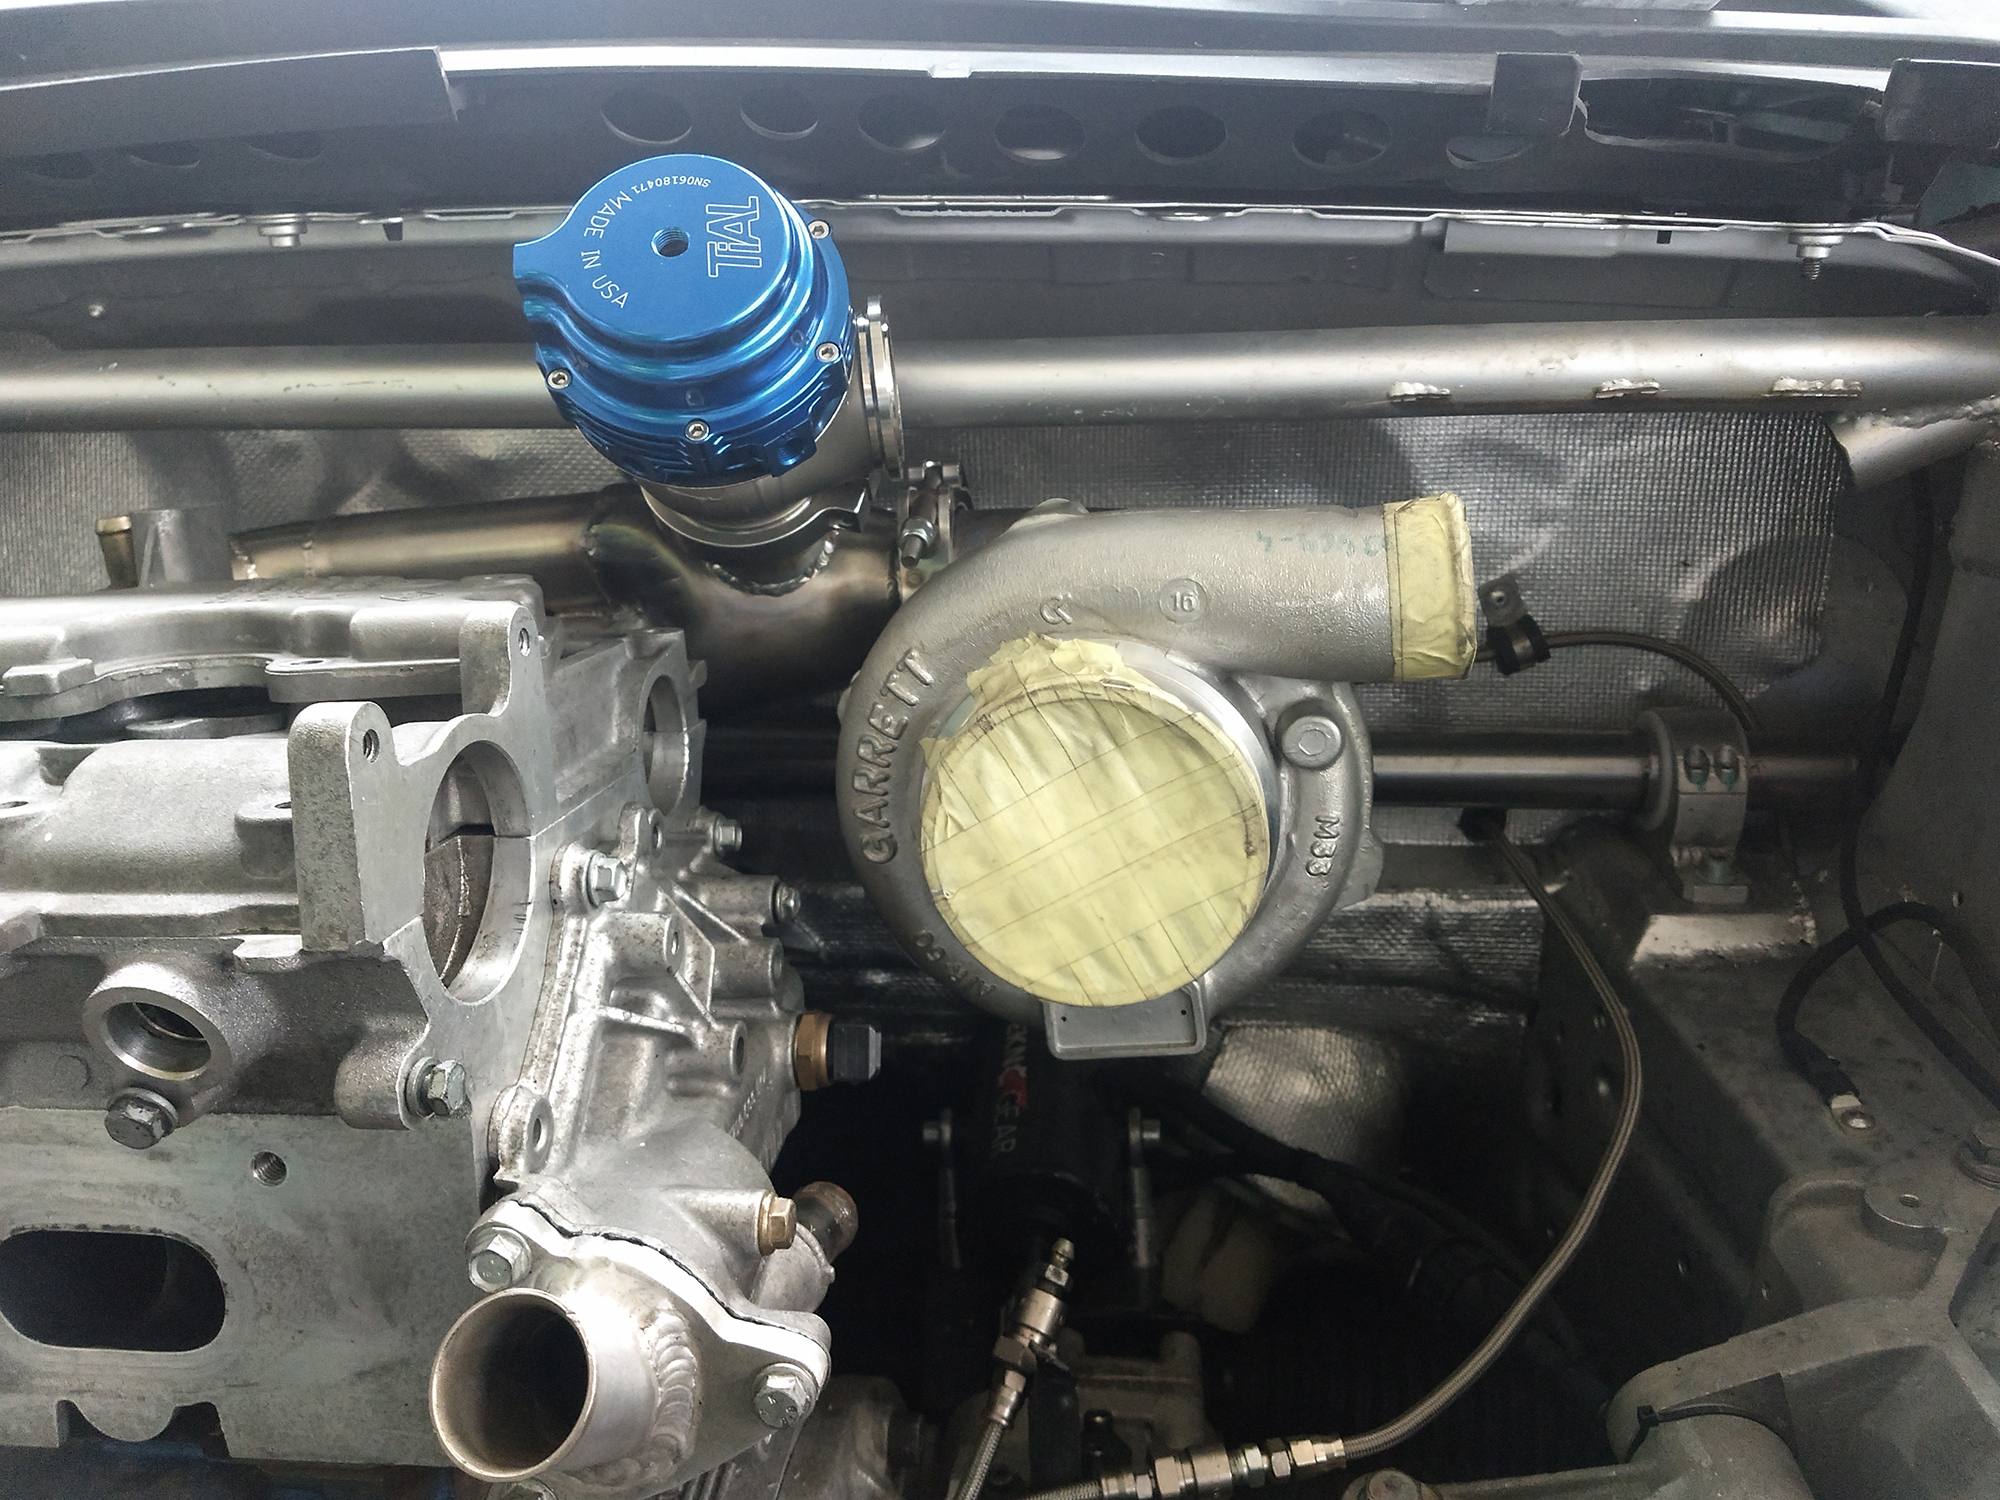 Installazione nuovo turbo